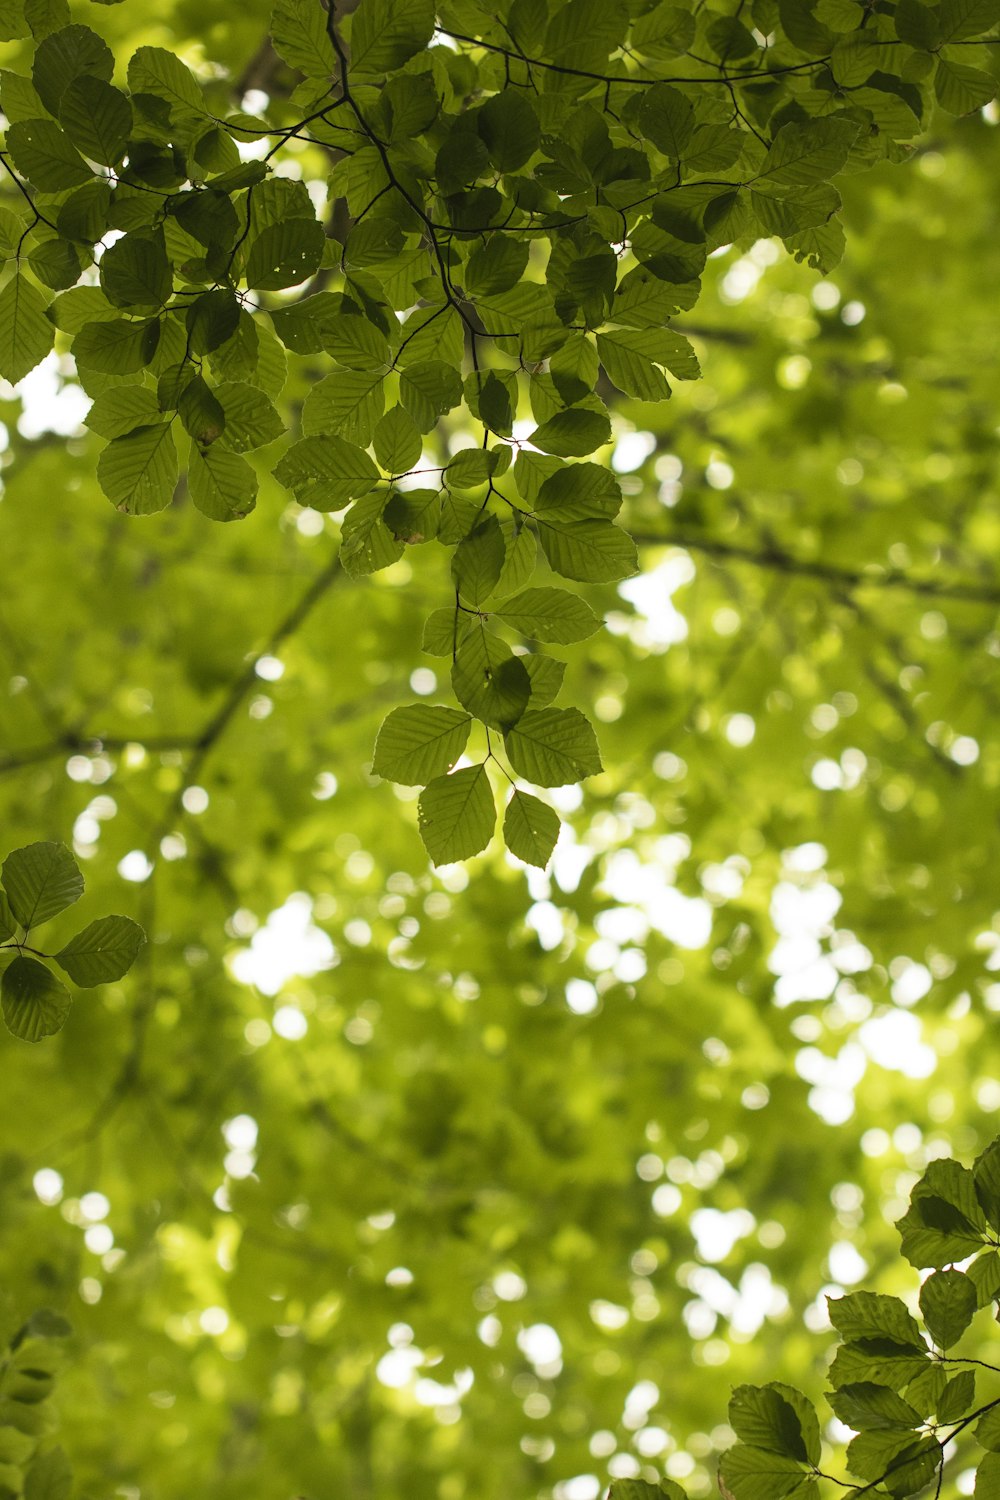 Des feuilles vertes pendent aux branches d’un arbre